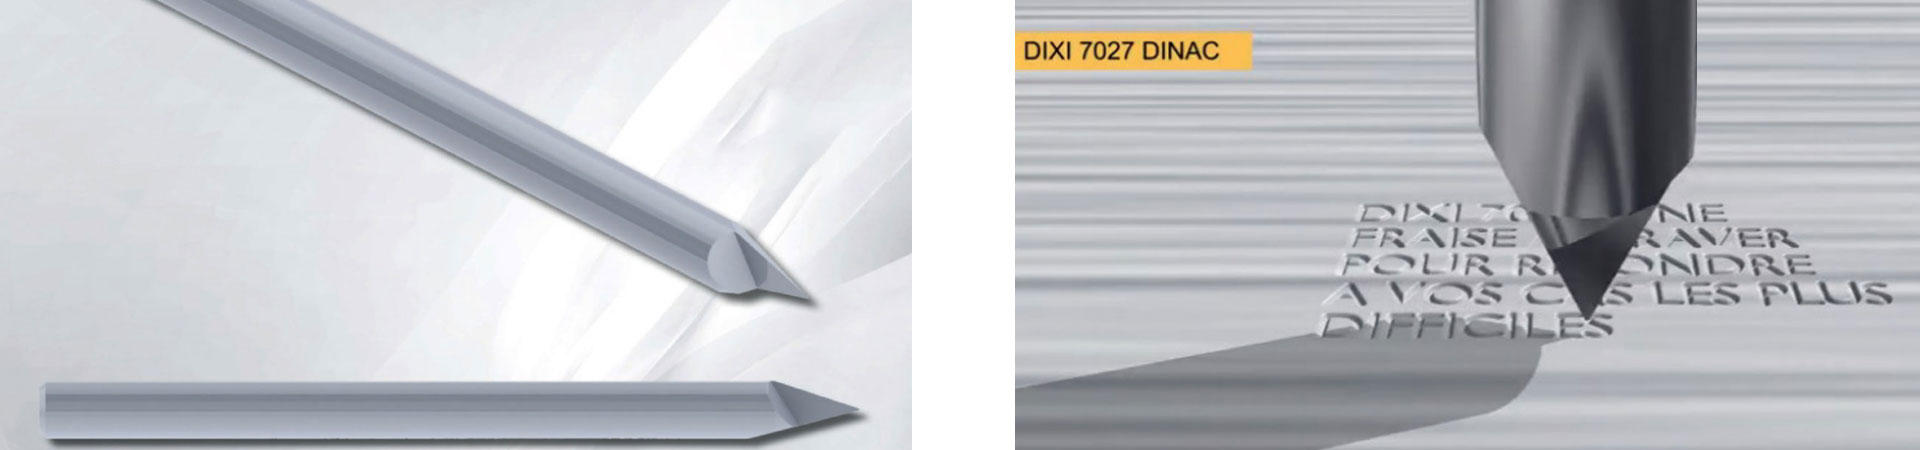 Soluzioni a 360 gradi DIXI-DINAC 7027 - UTENSILI E ATTREZATURE